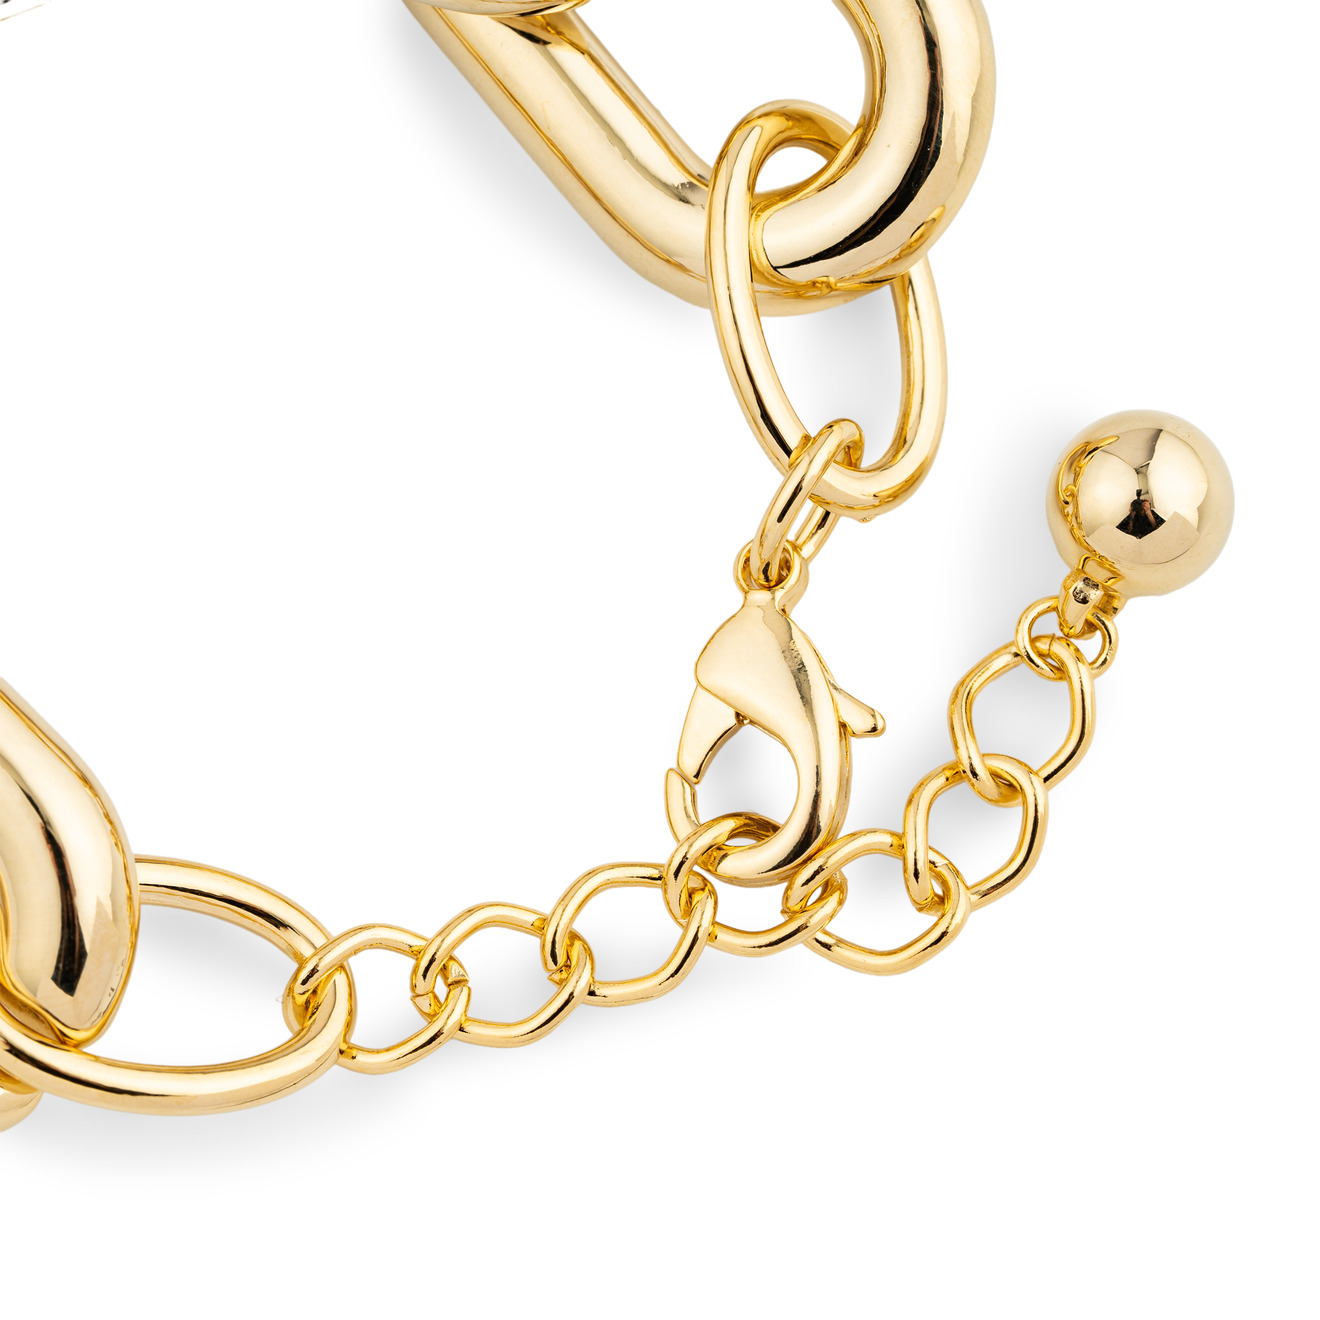 Aqua Золотистый браслет-цепь из крупных звеньев lisa smith серебристый браслет цепь из круглых звеньев